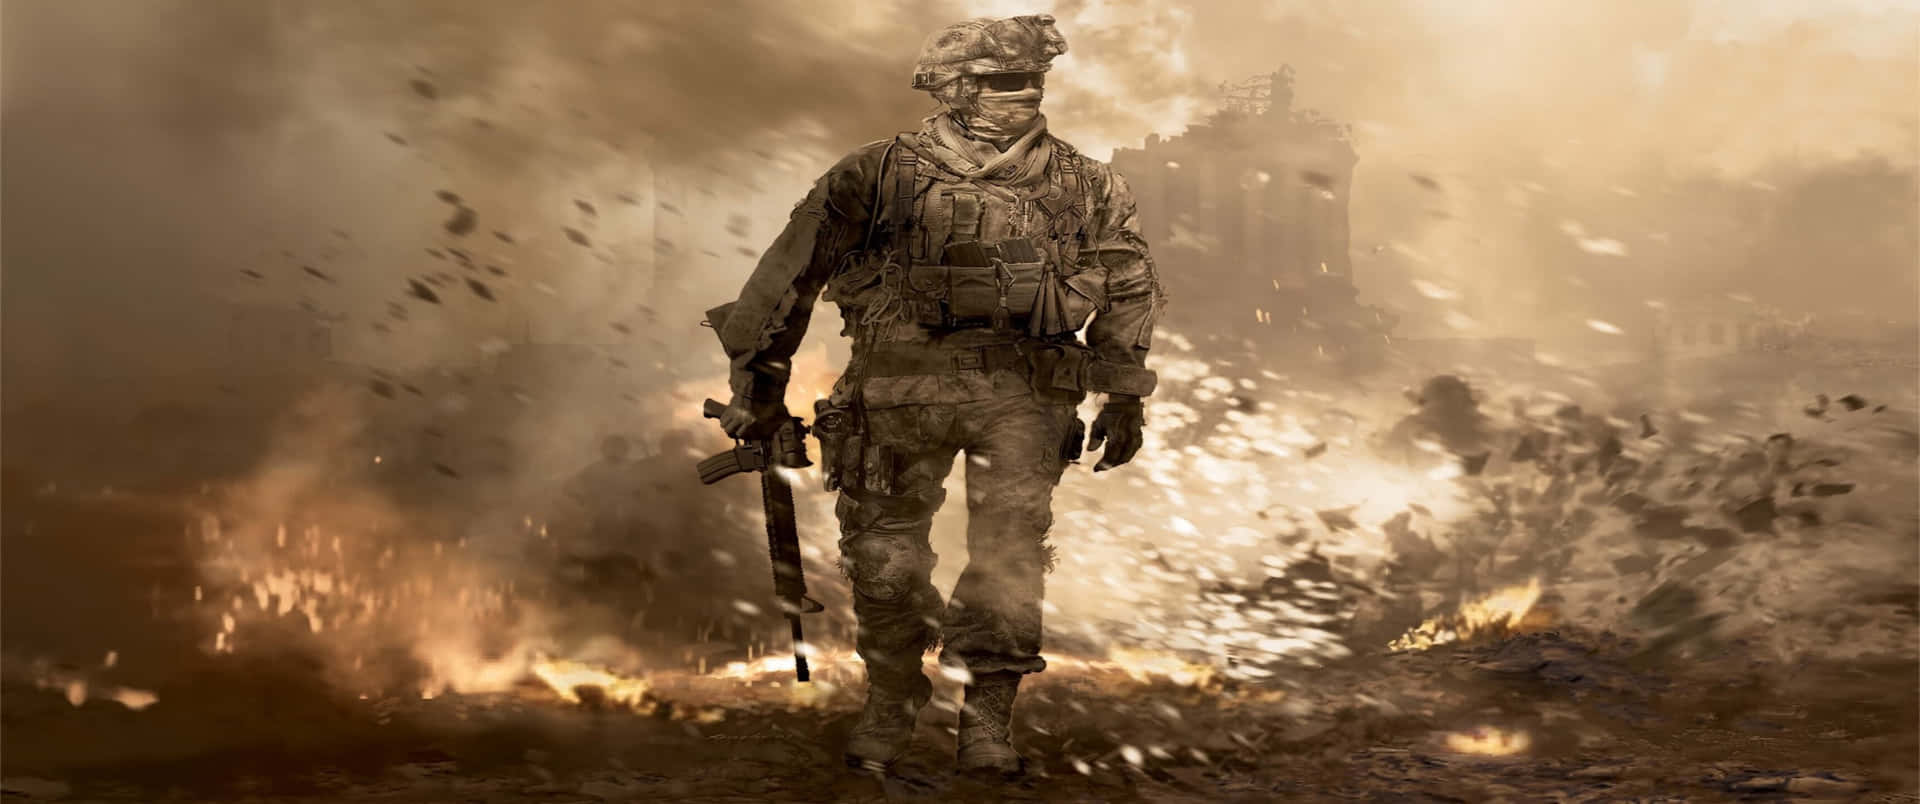 Explosionsscenen3440x1440p Förbakgrundsbild I Call Of Duty Modern Warfare.